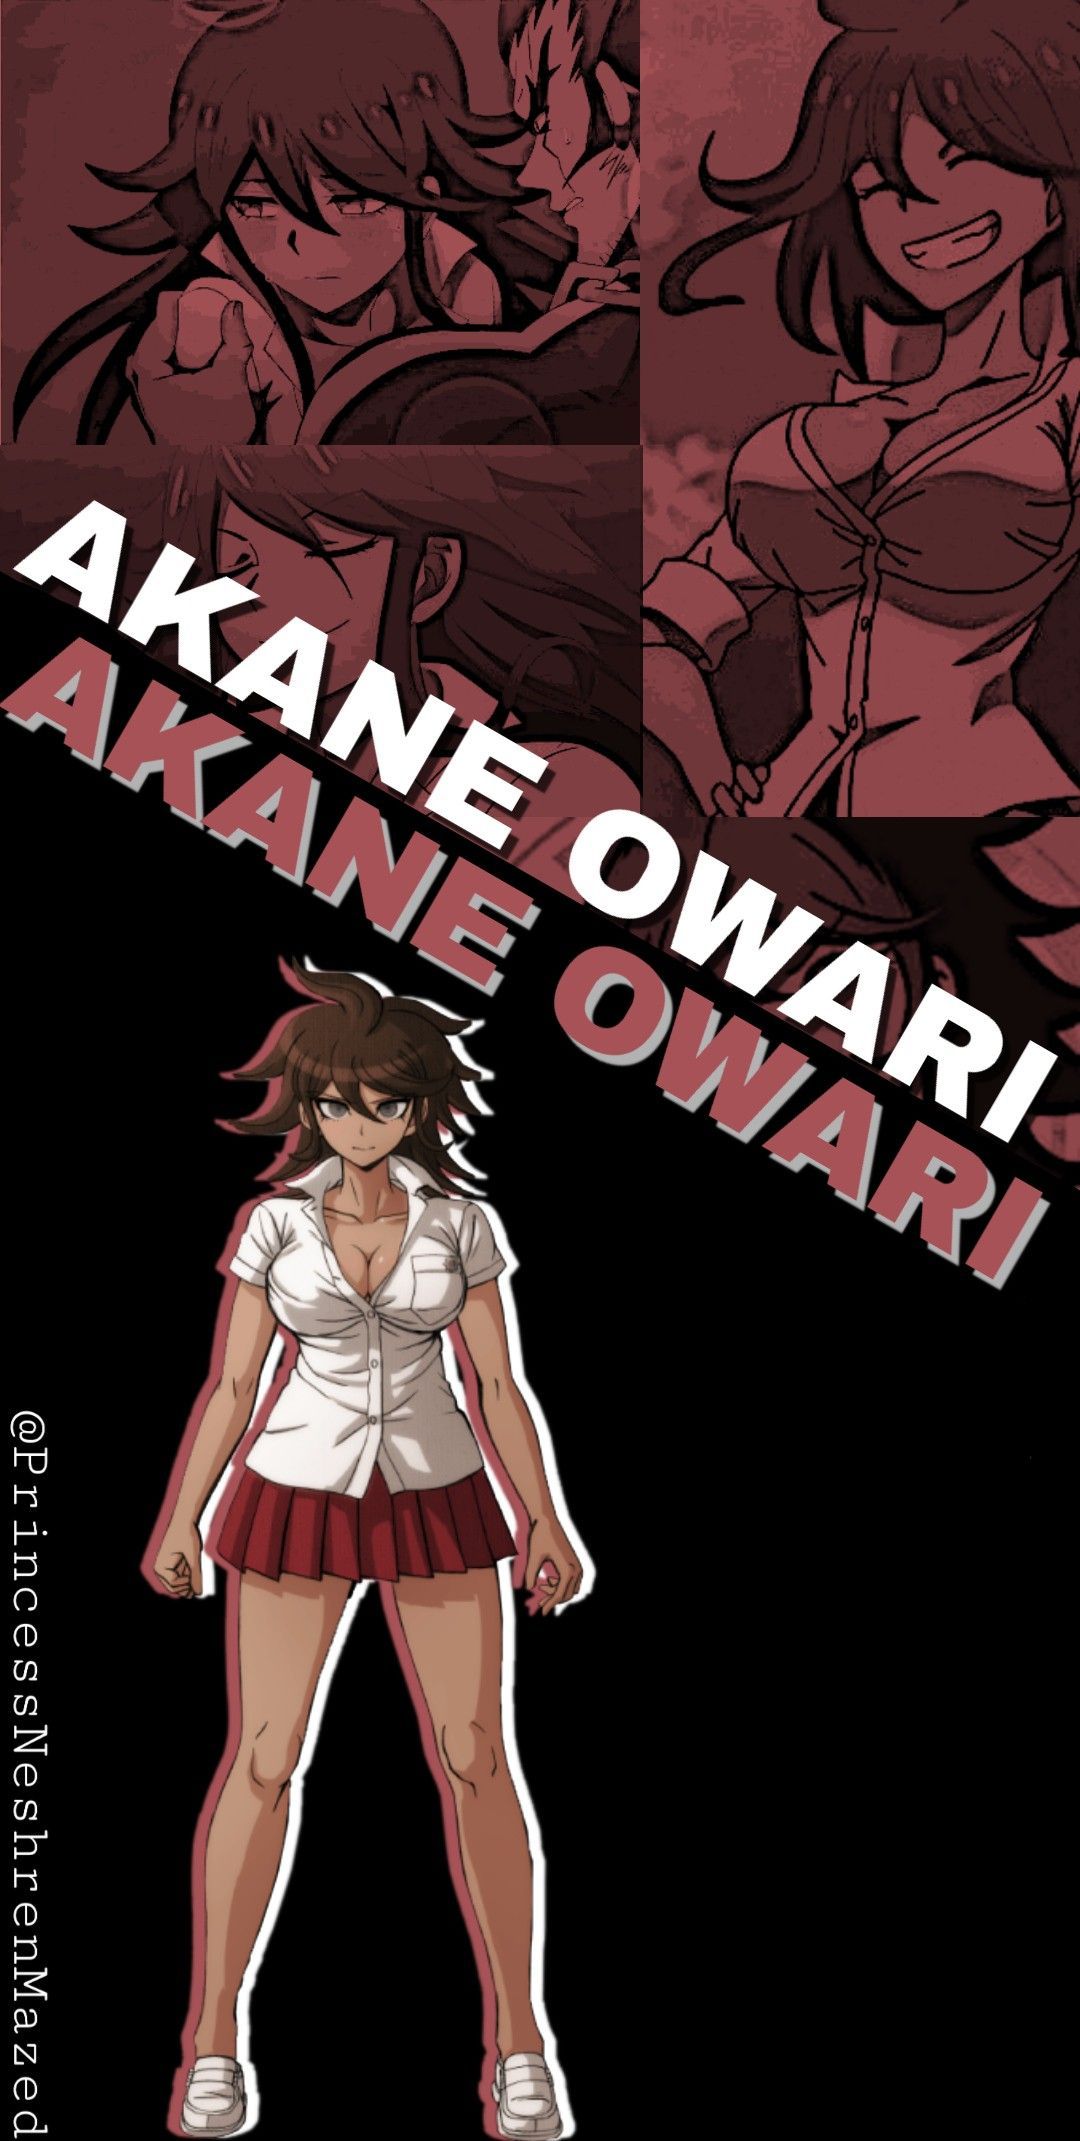 Akane Owari wallpaper. Danganronpa, Danganronpa characters, Anime wallpaper